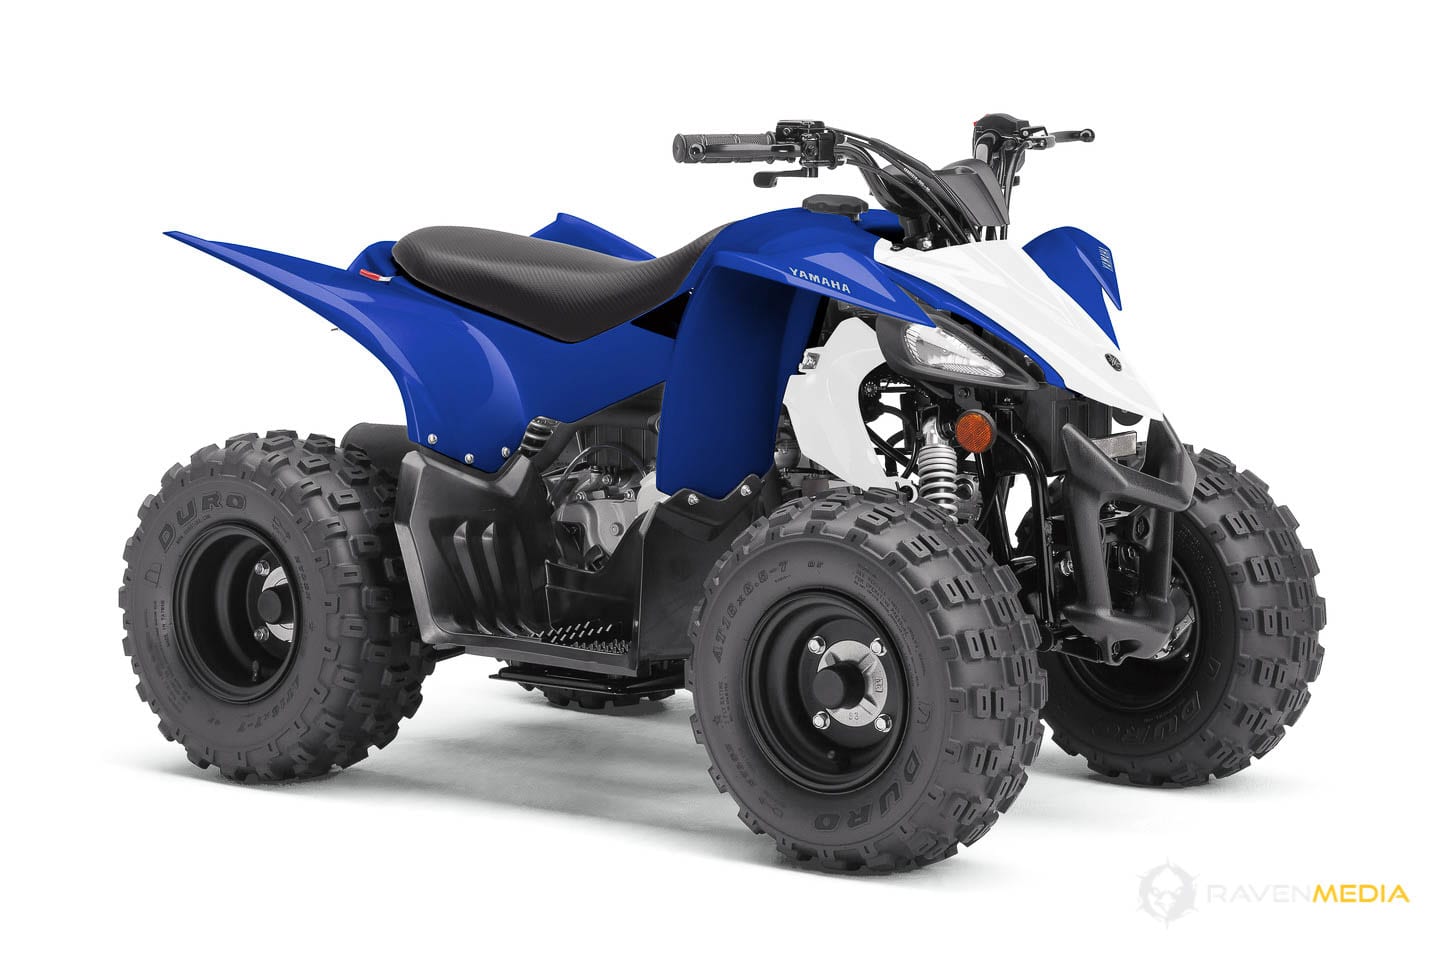 2019 Yamaha ATV Lineup